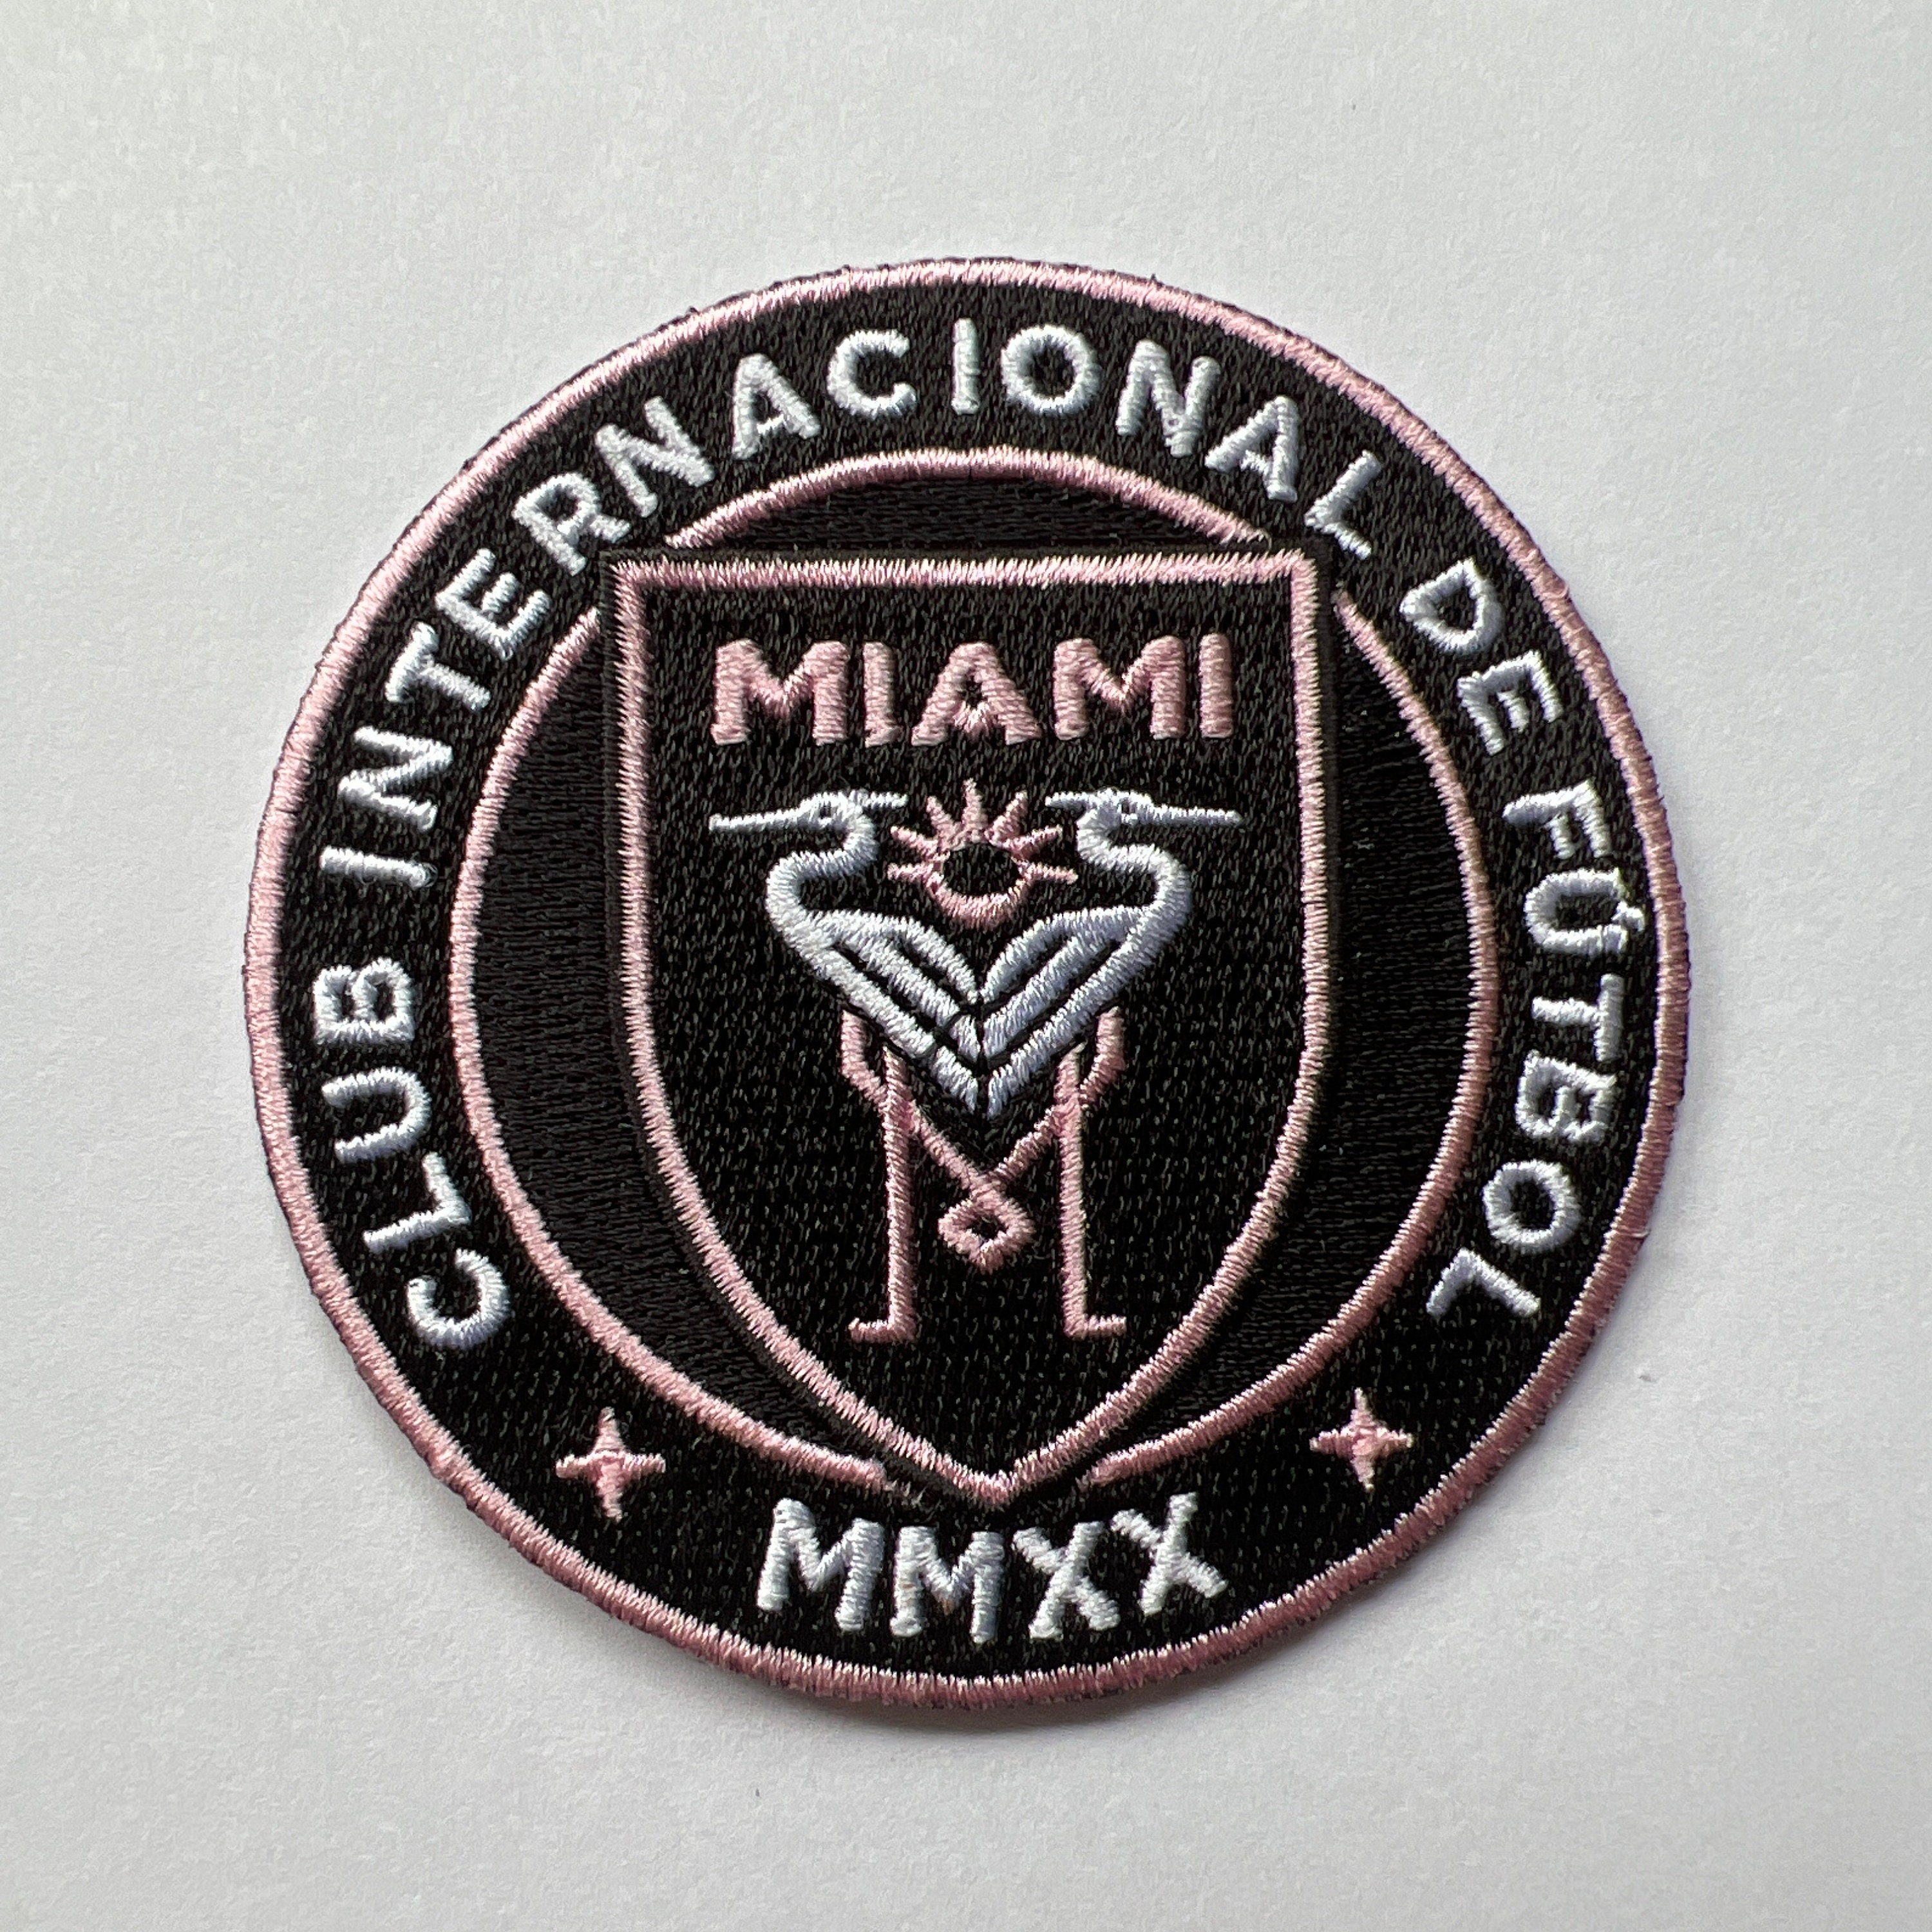 Miami Heat Miami VIce Neo 39/30 12286311 - 194090454925